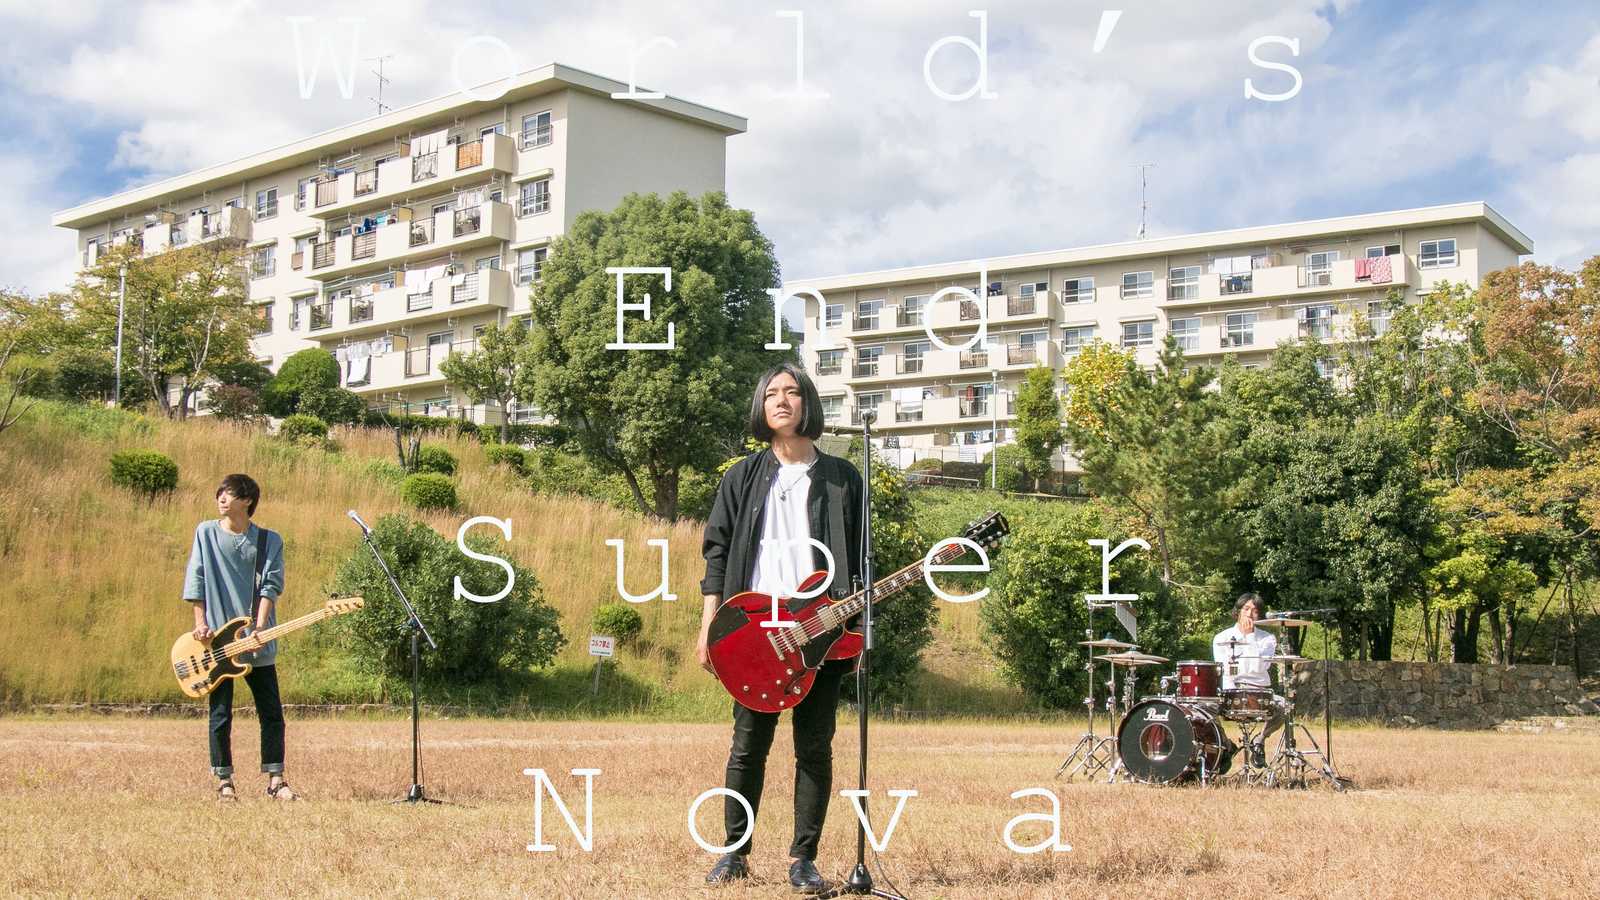 Un nouveau mini-album pour World's End Super Nova © World's End Super Nova. All rights reserved.